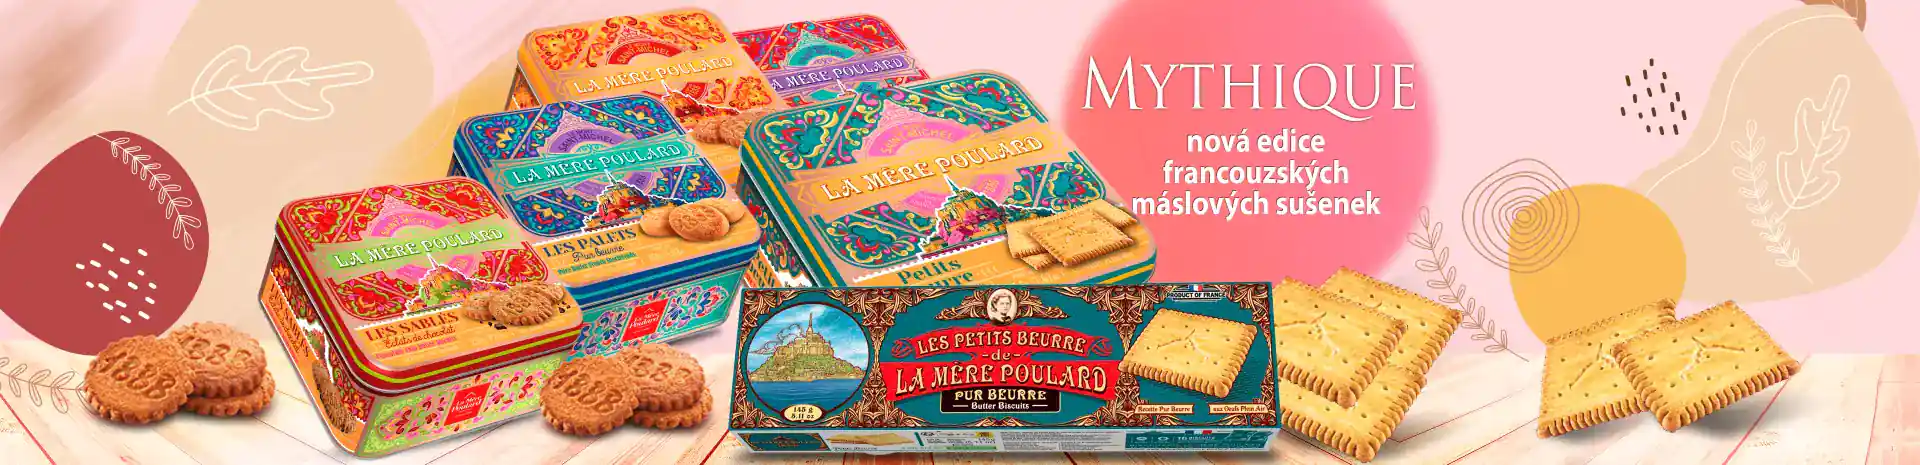 Mythique - nová edice francouzských máslových sušenek 